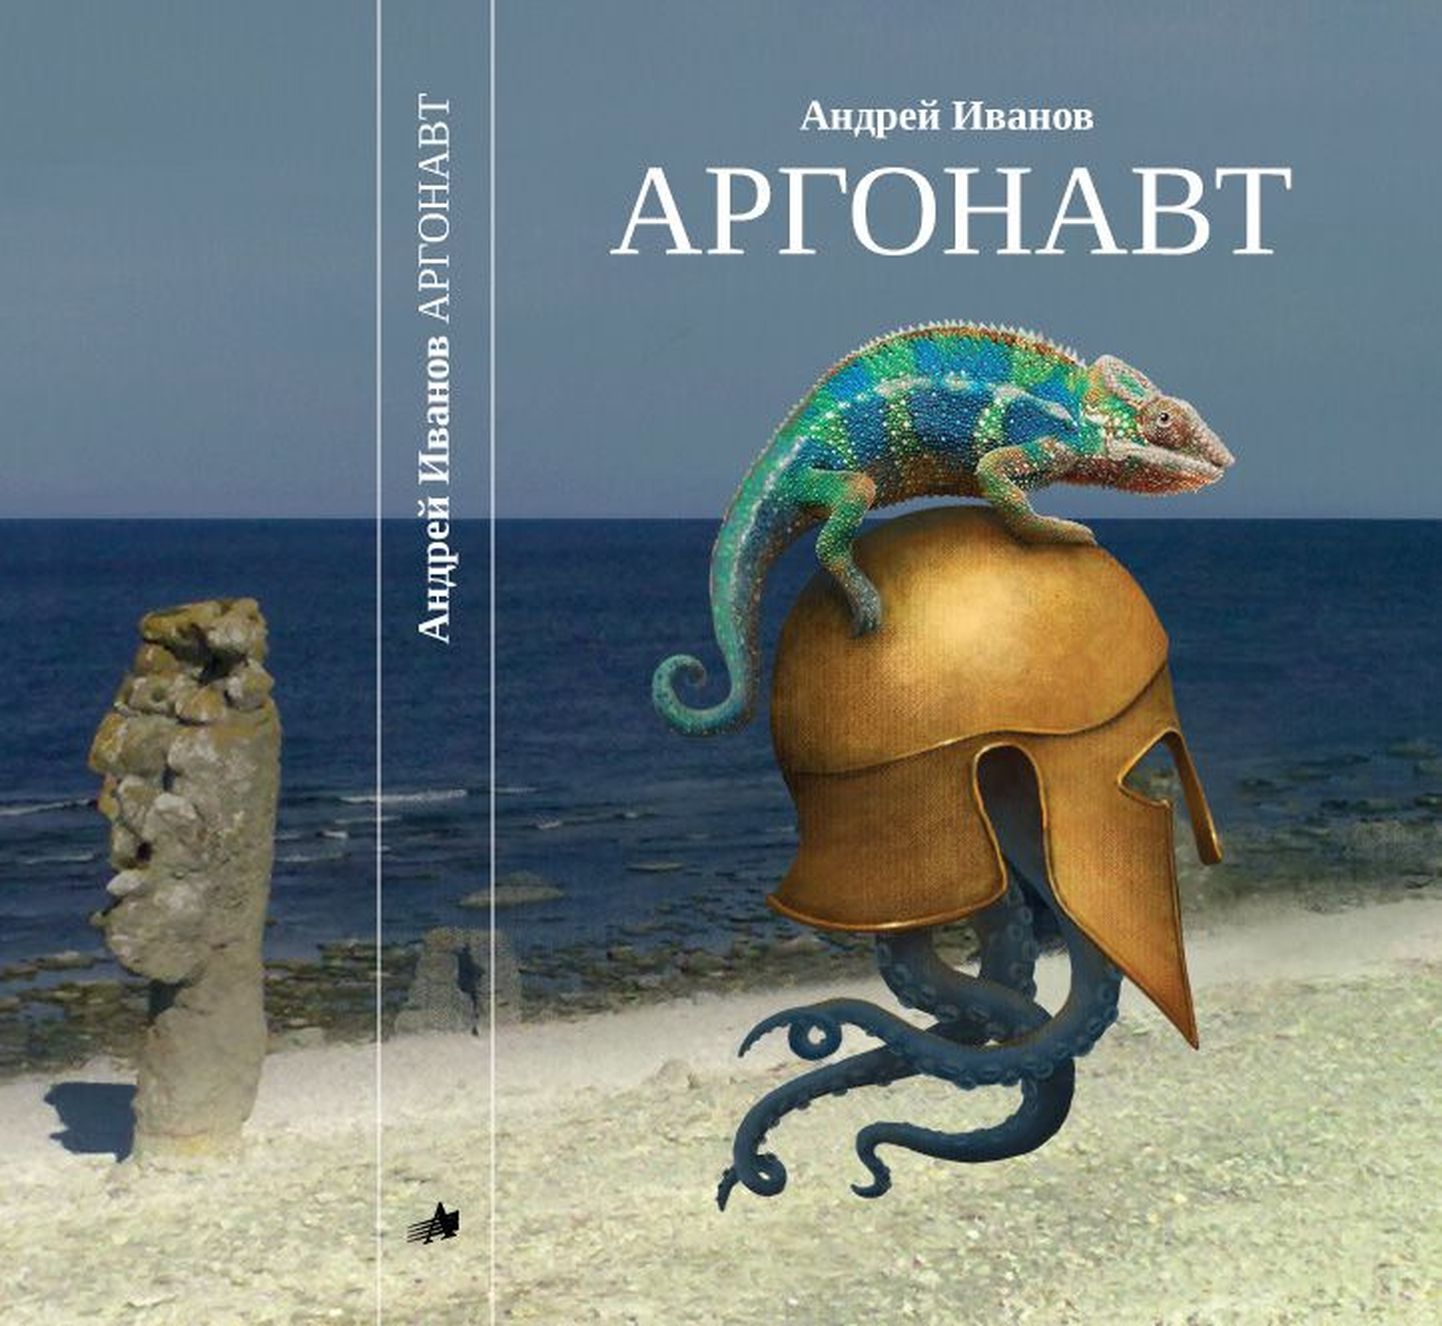 Андрей Иванов написал книгу, в которой есть Эстония, Джойс, Набоков, поиски истины и просветление.